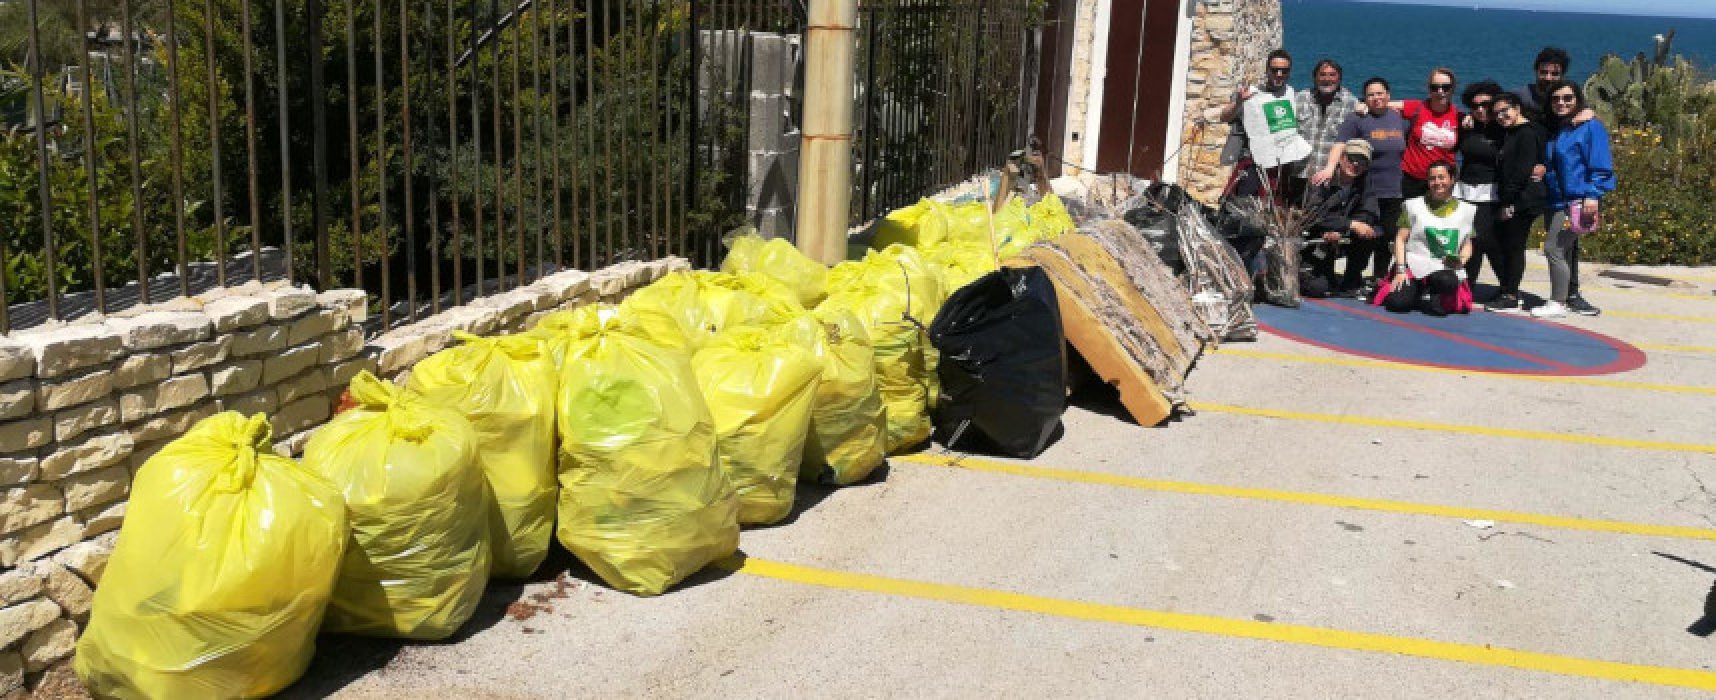 Pulizia spiaggia La Torretta, Pro Natura: raccolte 28 buste di plastica